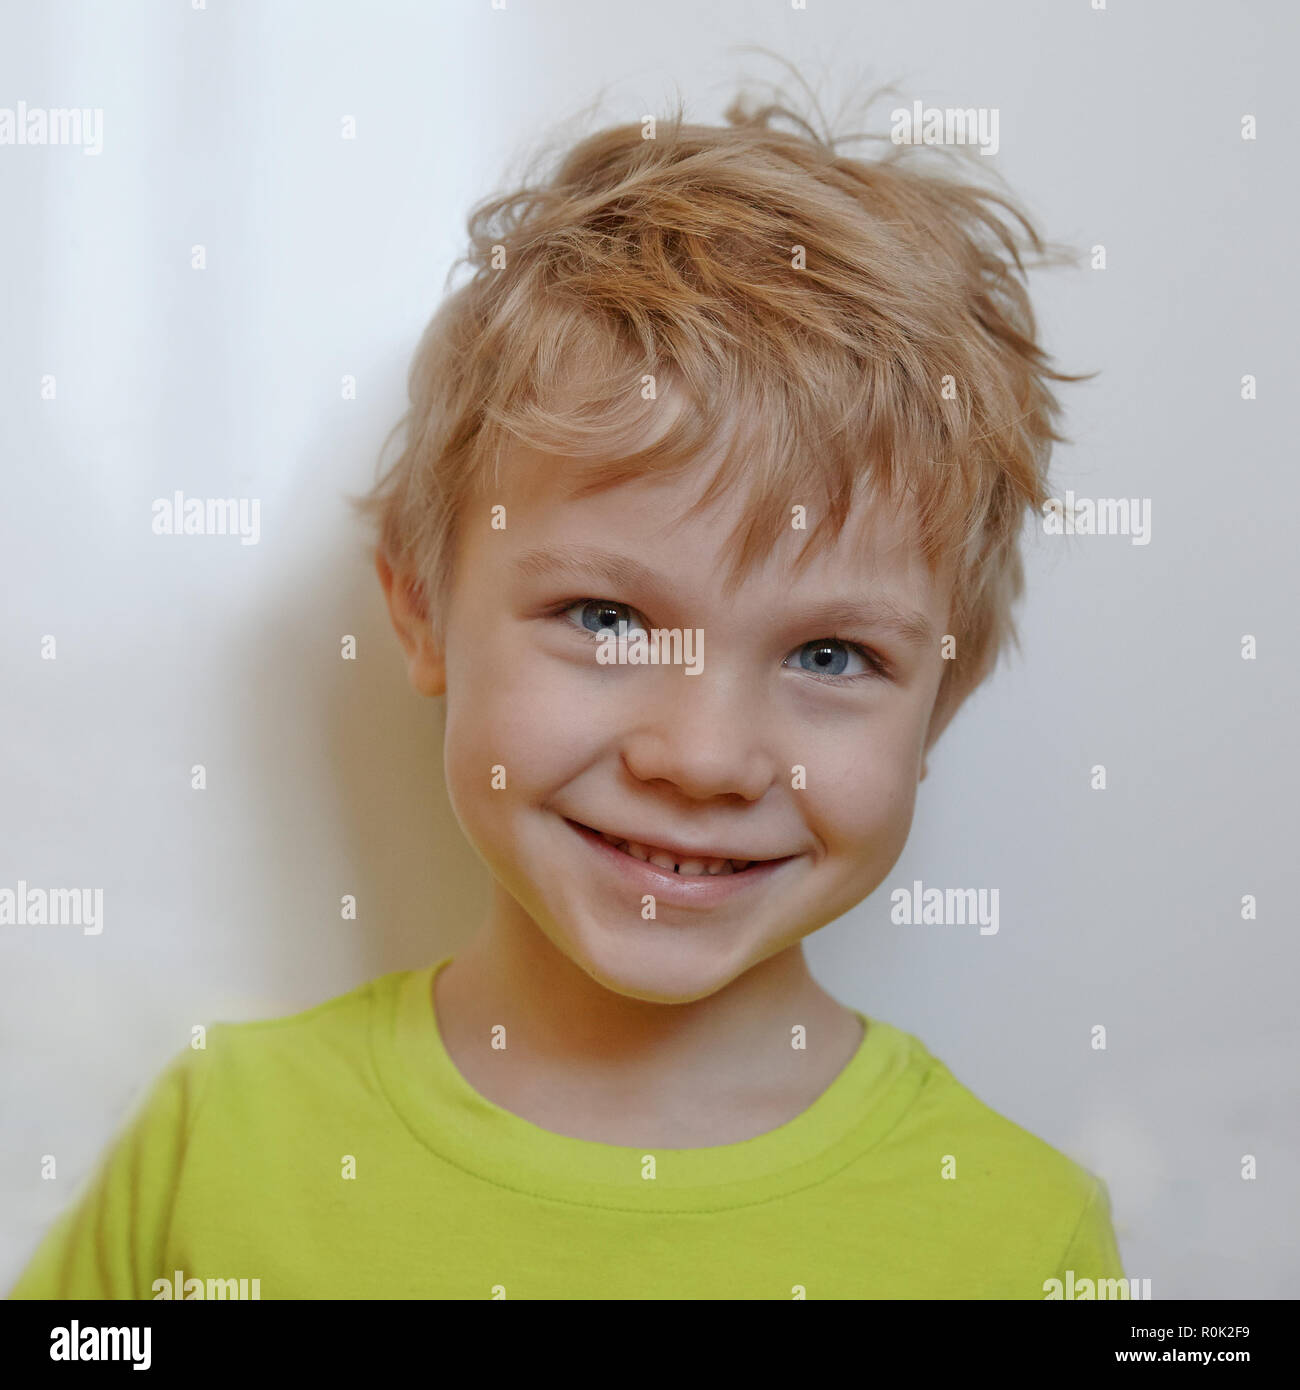 Beautiful smiling cute boy Stock Photo